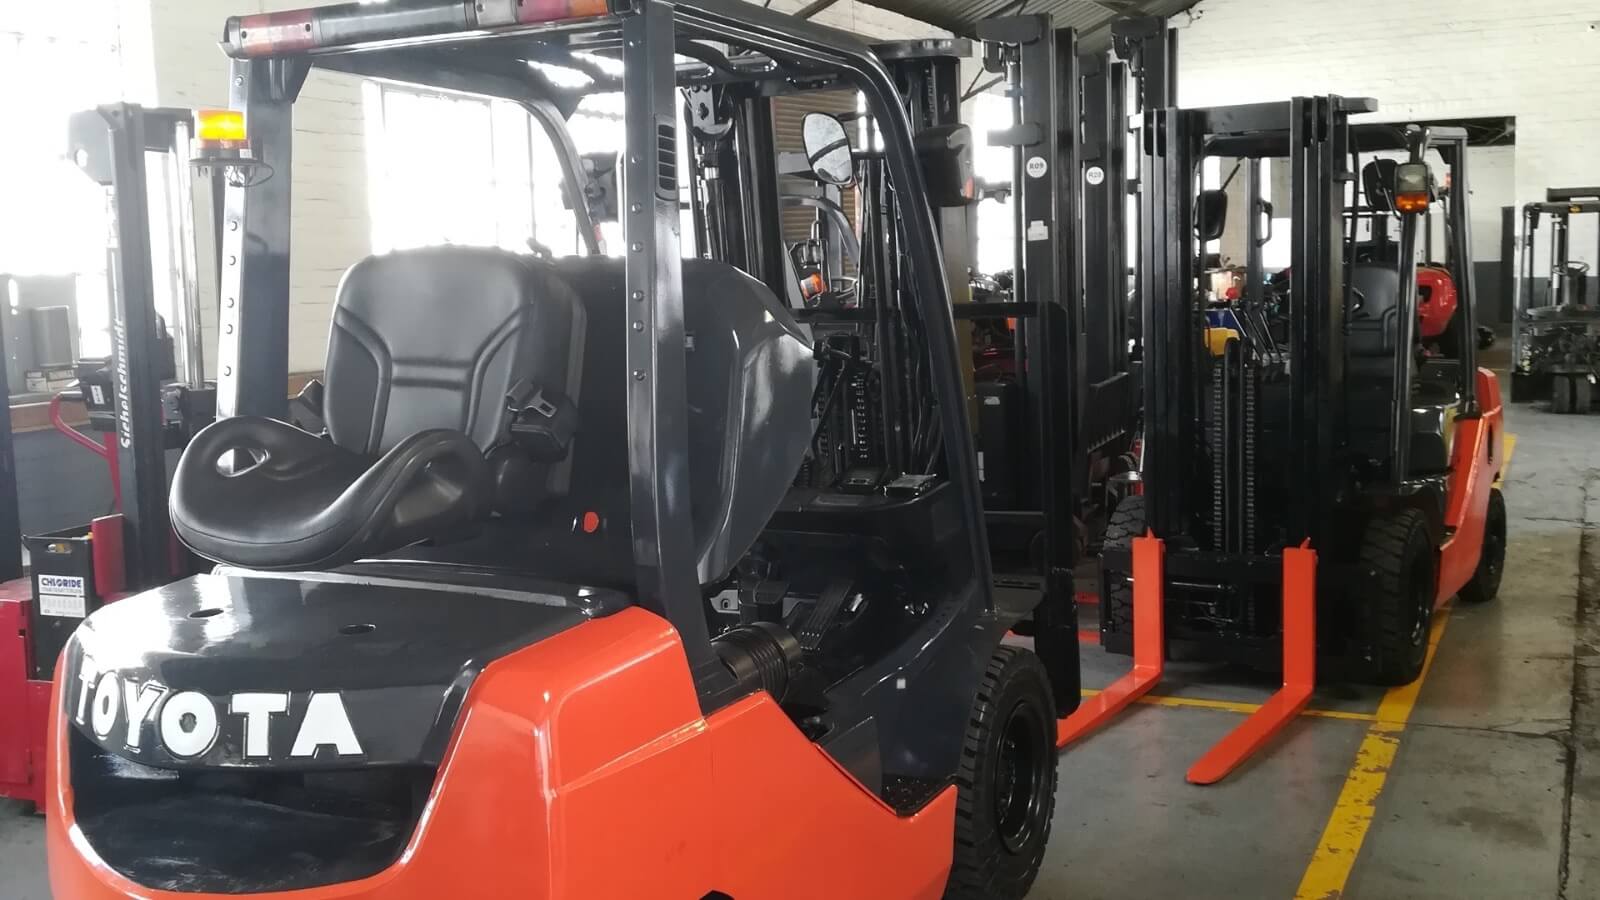 (已失效)Profitable Forklift Business In Malaysia To Let Go!